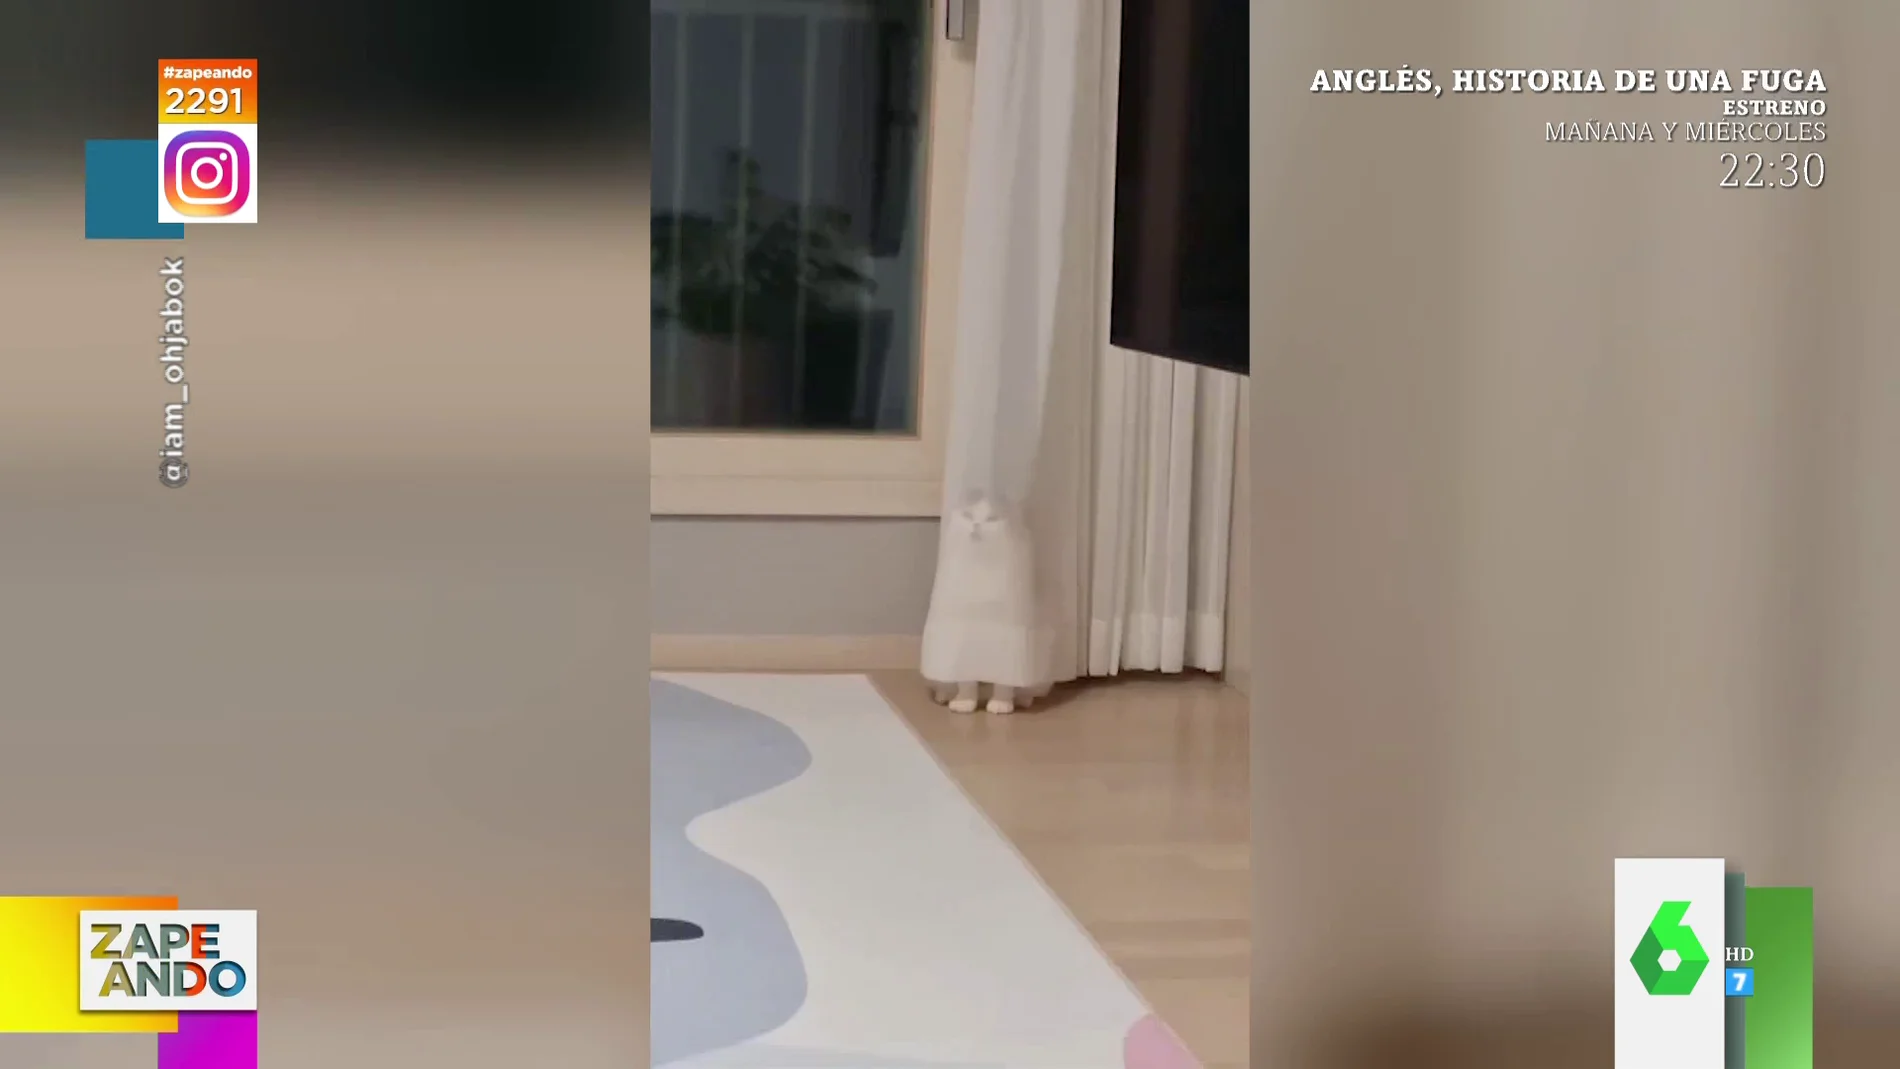 El escondite viral de un gato: se mete detrás de las cortinas transparentes y cree que no le ven